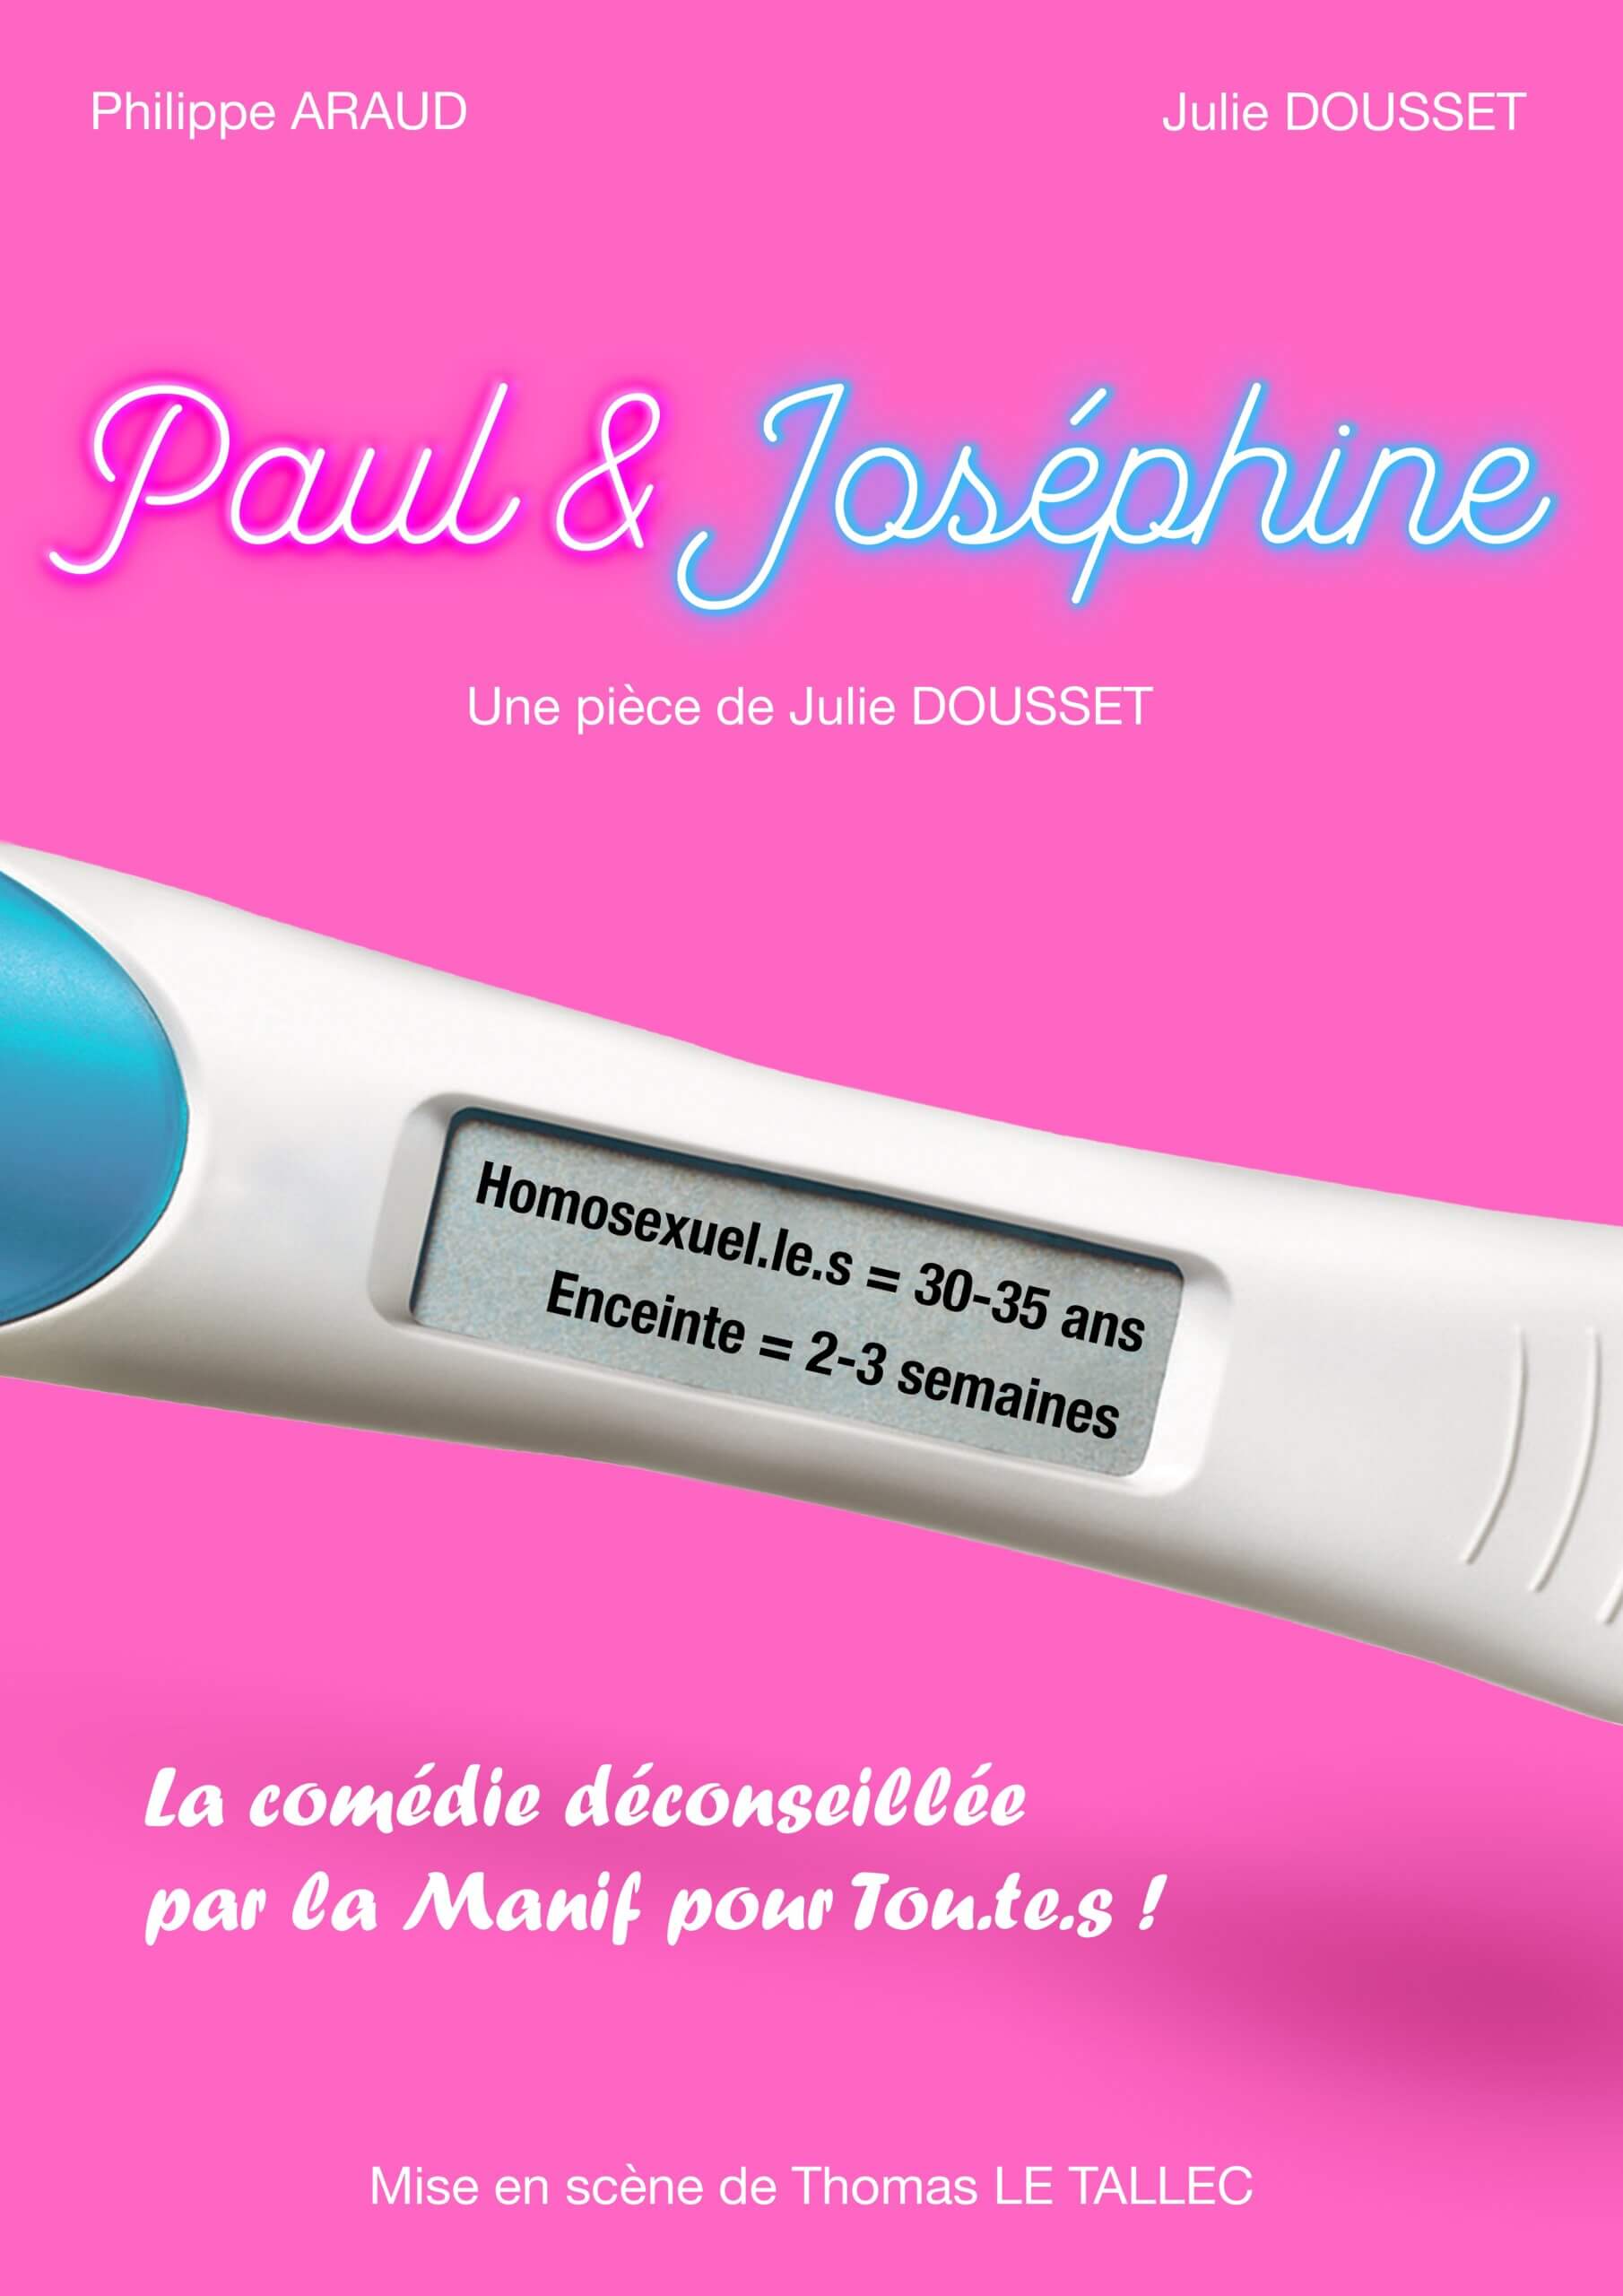 Affiche "Paul & Joséphine"